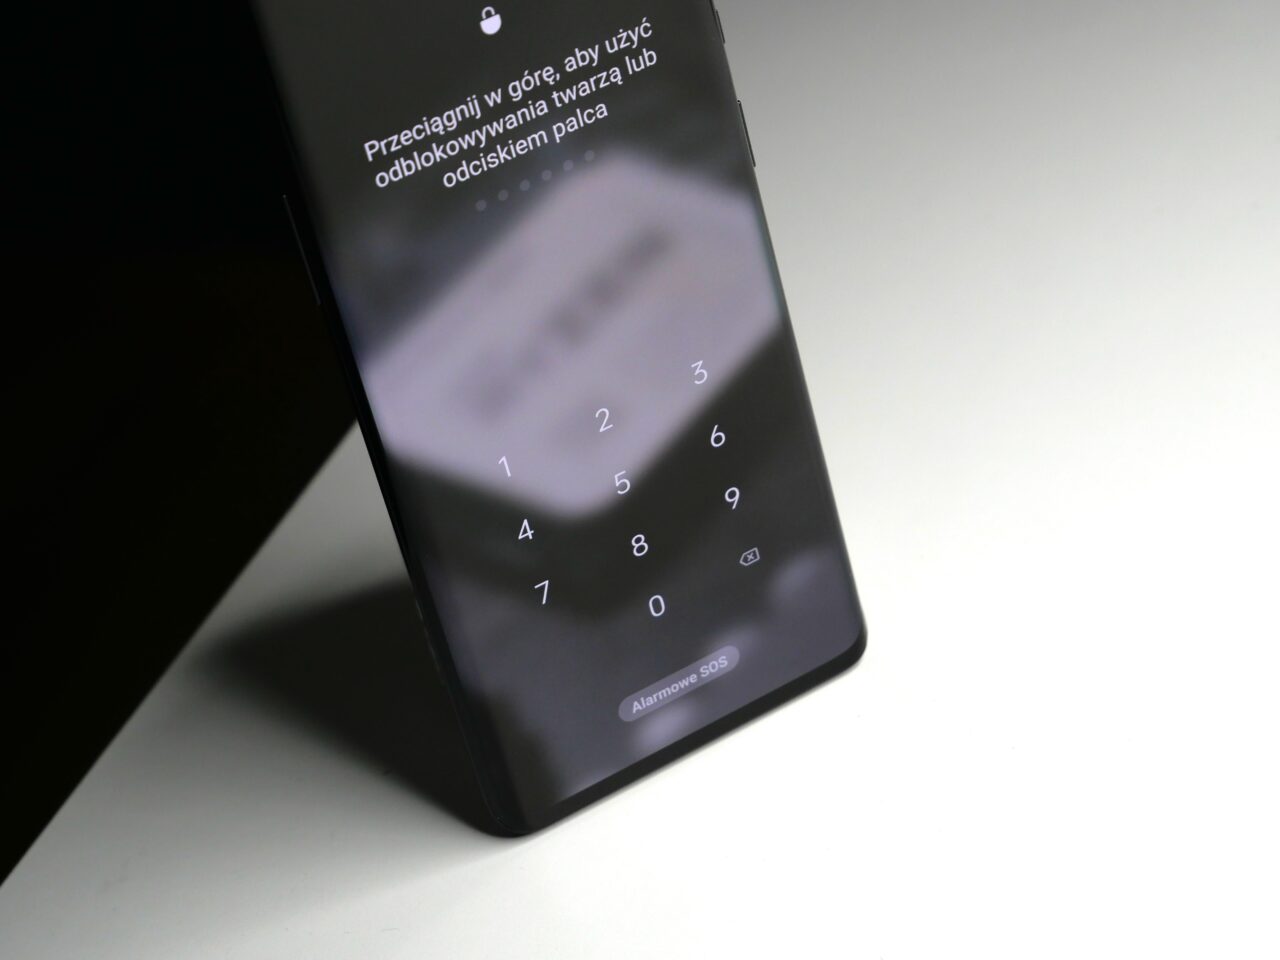 Smartfon leży na białym stole z widocznym ekranem blokady i klawiaturą numeryczną do wprowadzania kodu PIN.